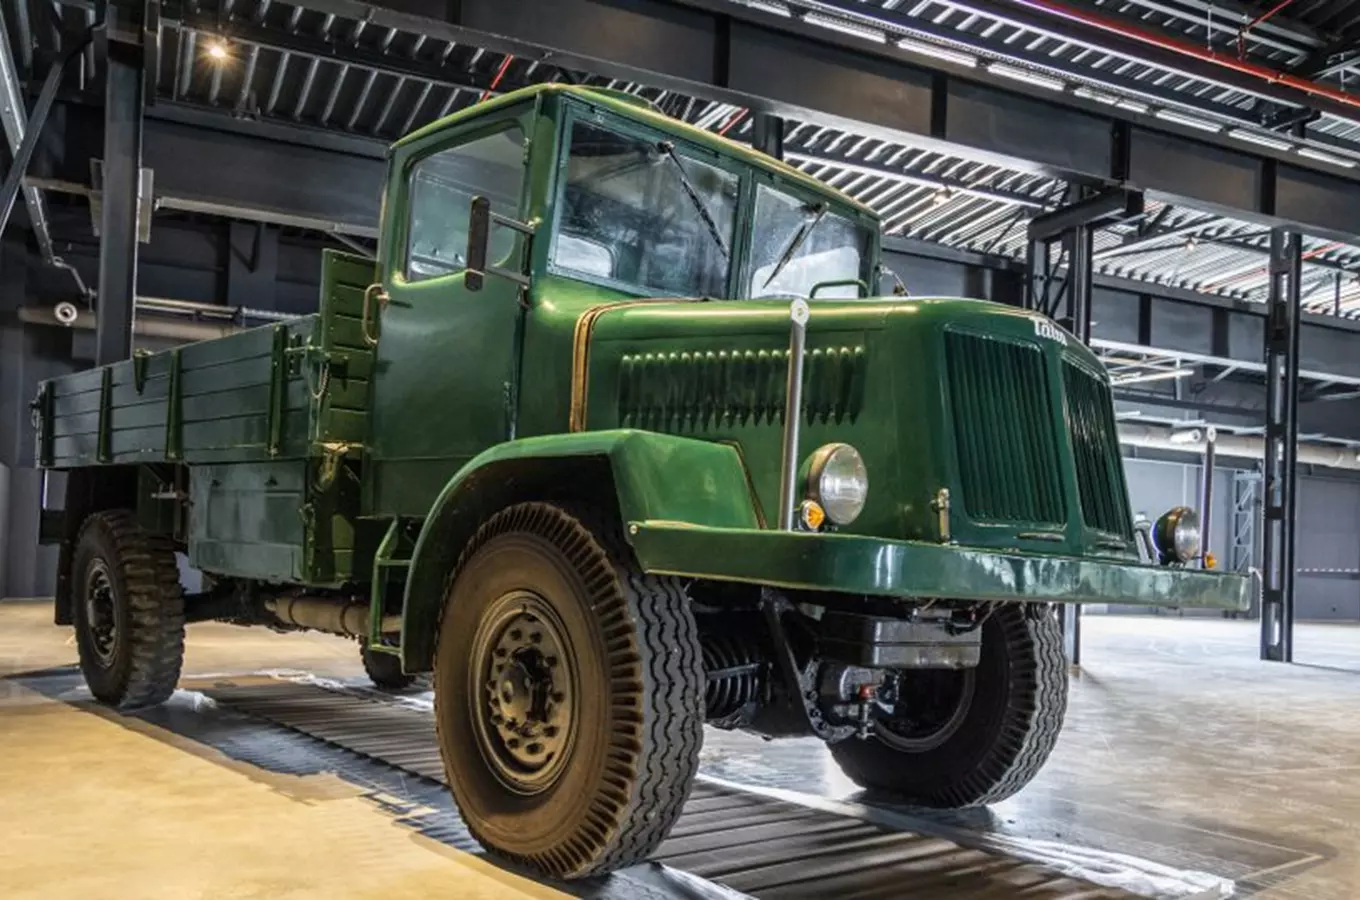 Muzeum nákladních automobilů Tatra přivítalo první exponáty